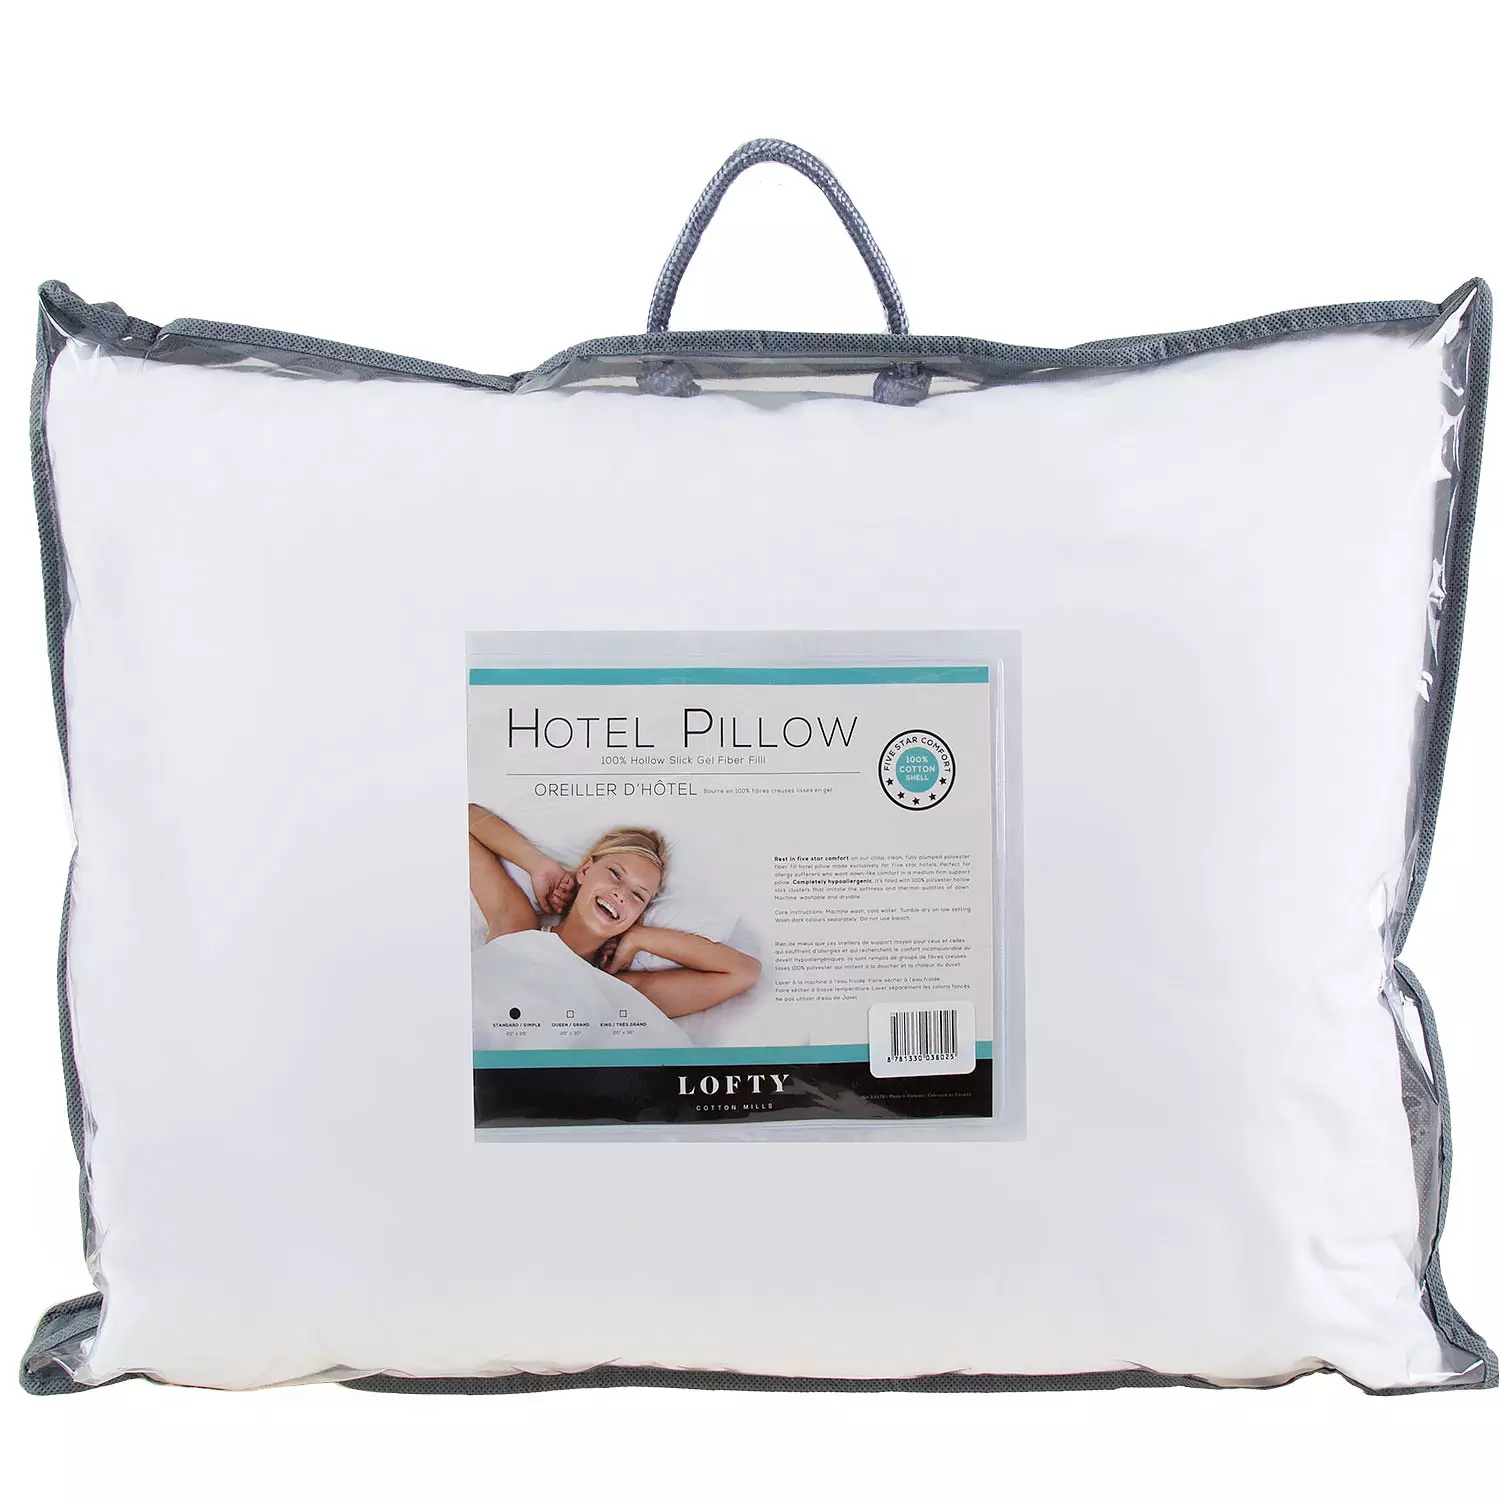 Lofty - Hotel pillow, 20"x26" - Standard